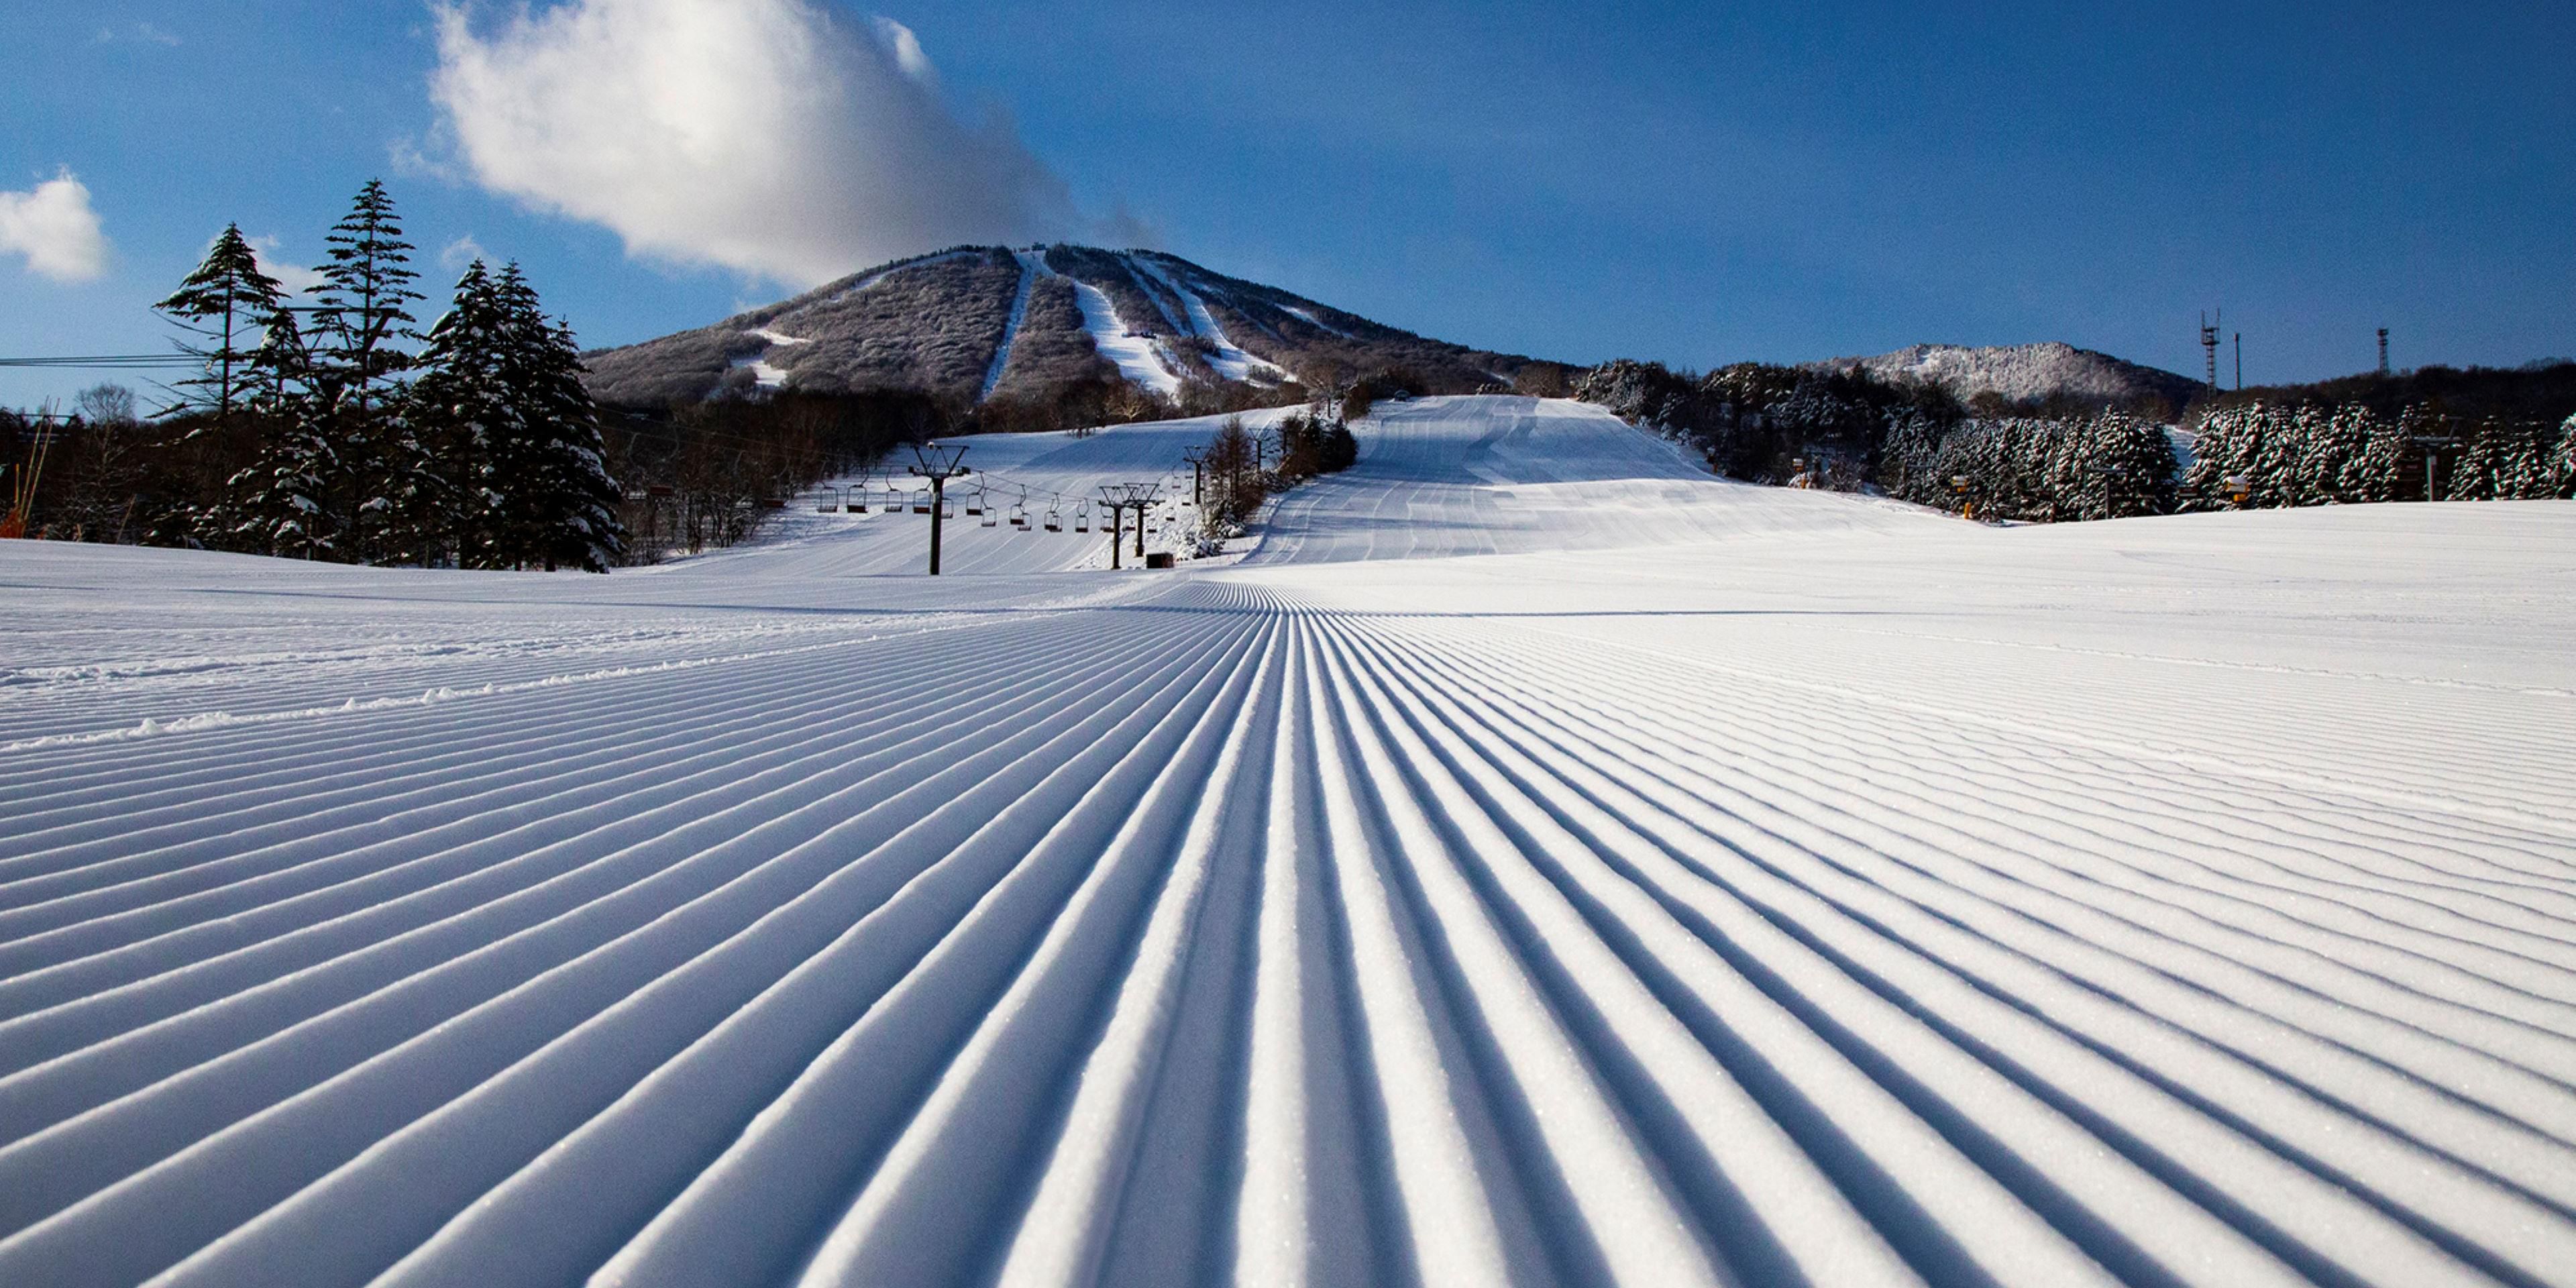 安比高原スキー場は「WORLD SKI AWARDS Japan’s Best Ski Resort 2023」において最優秀賞を受賞しました。ロングコース主体の全21コースのビッグゲレンデと、極上の雪質。初級者から上級者までが楽しめる多彩なコースと、レンタル、スクール、レストランなど、充実した施設で、どなたにもお楽しみ頂けるマウンテンスノーリゾートです。※スキー場は、2023年12月よりオープン予定です。